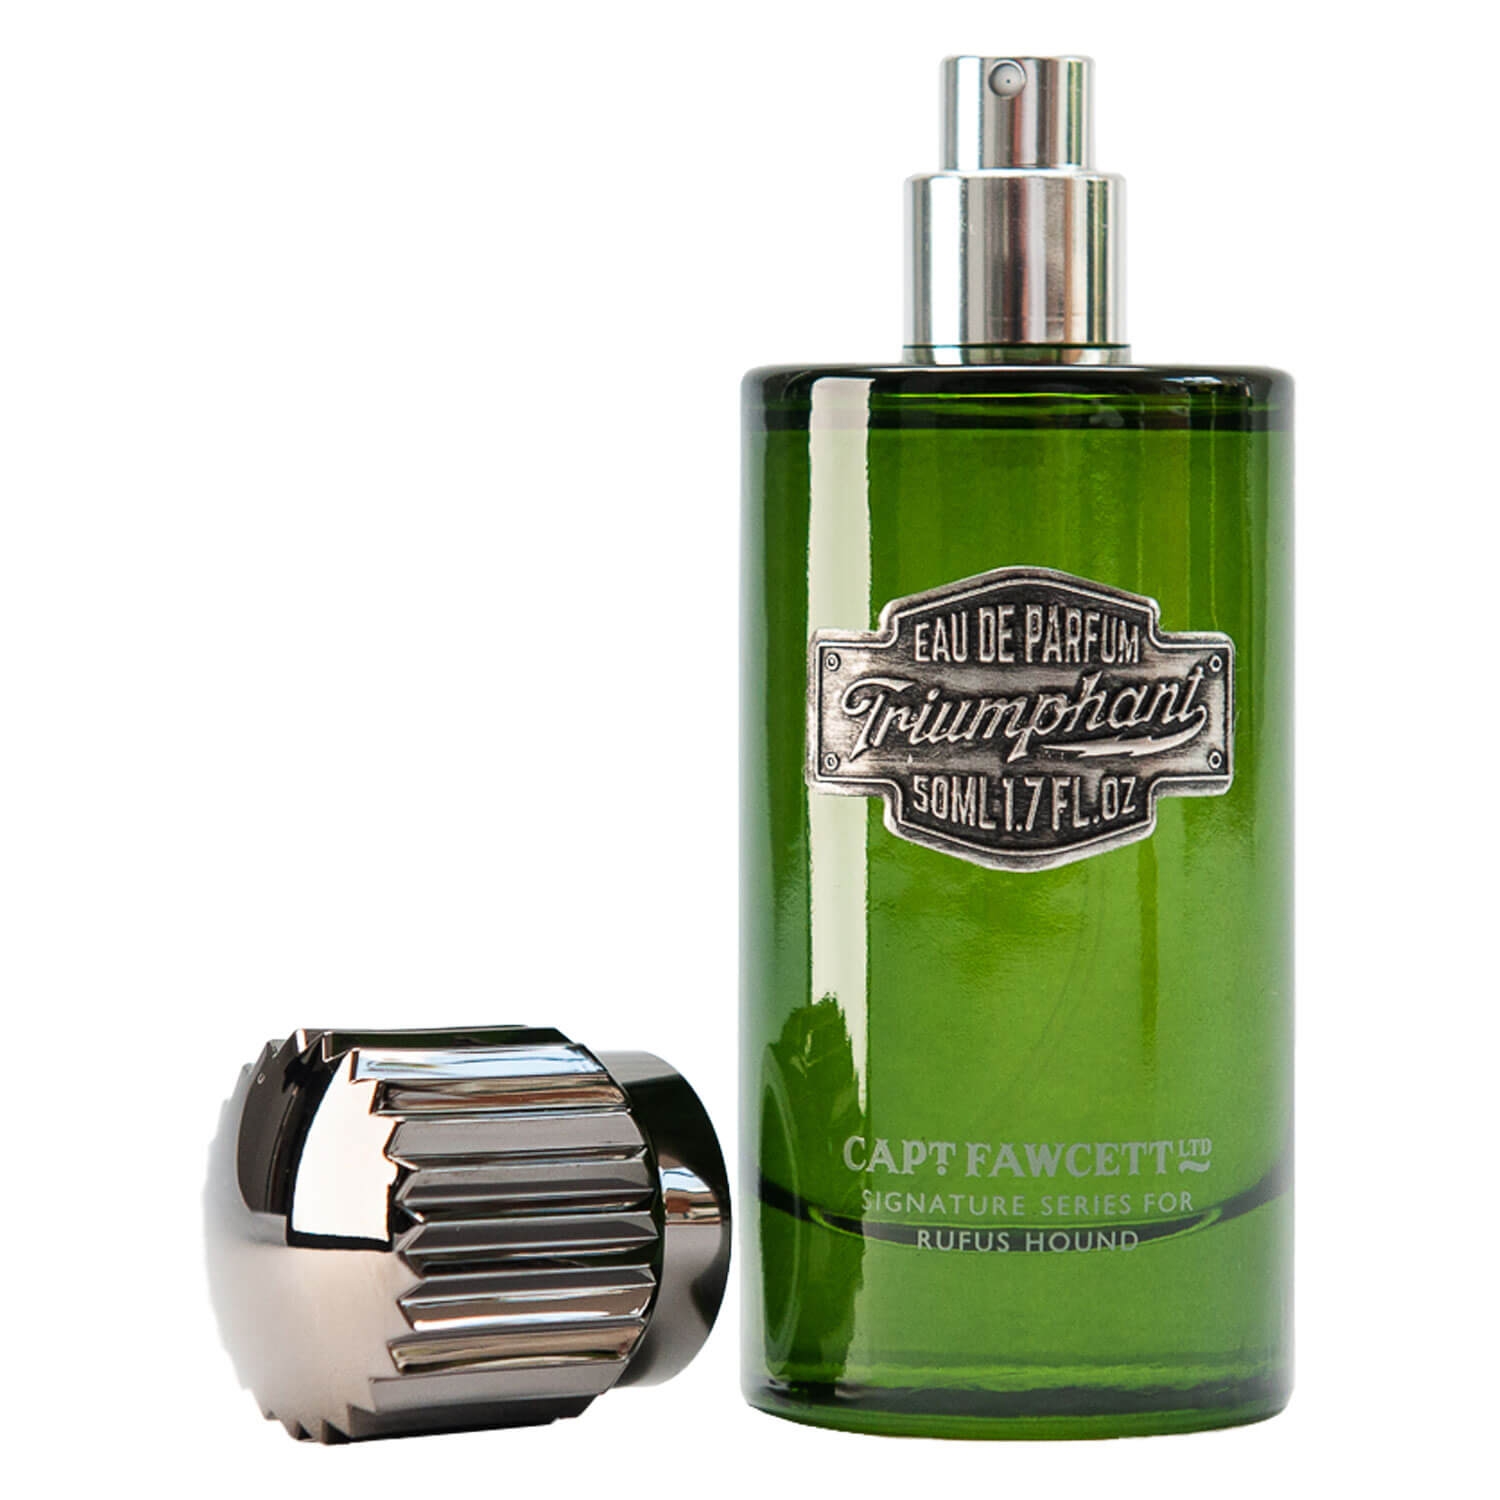 Produktbild von Capt. Fawcett Care - Triumphant Eau de Parfum